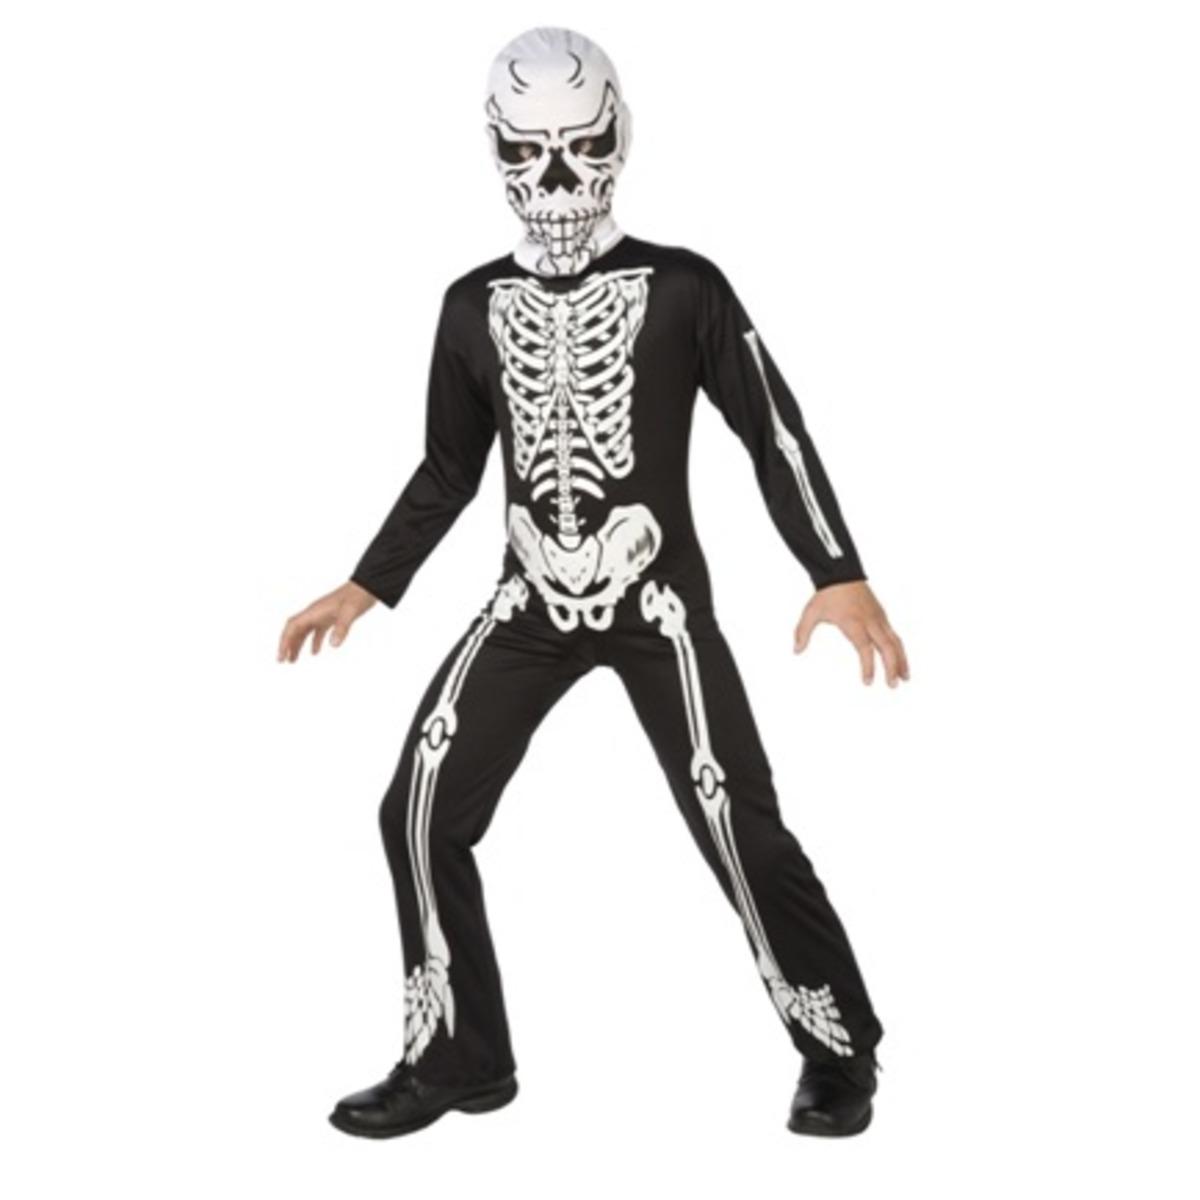 Déguisement de squelette pour enfant - Taille 4 à 9 ans - Noir, blanc